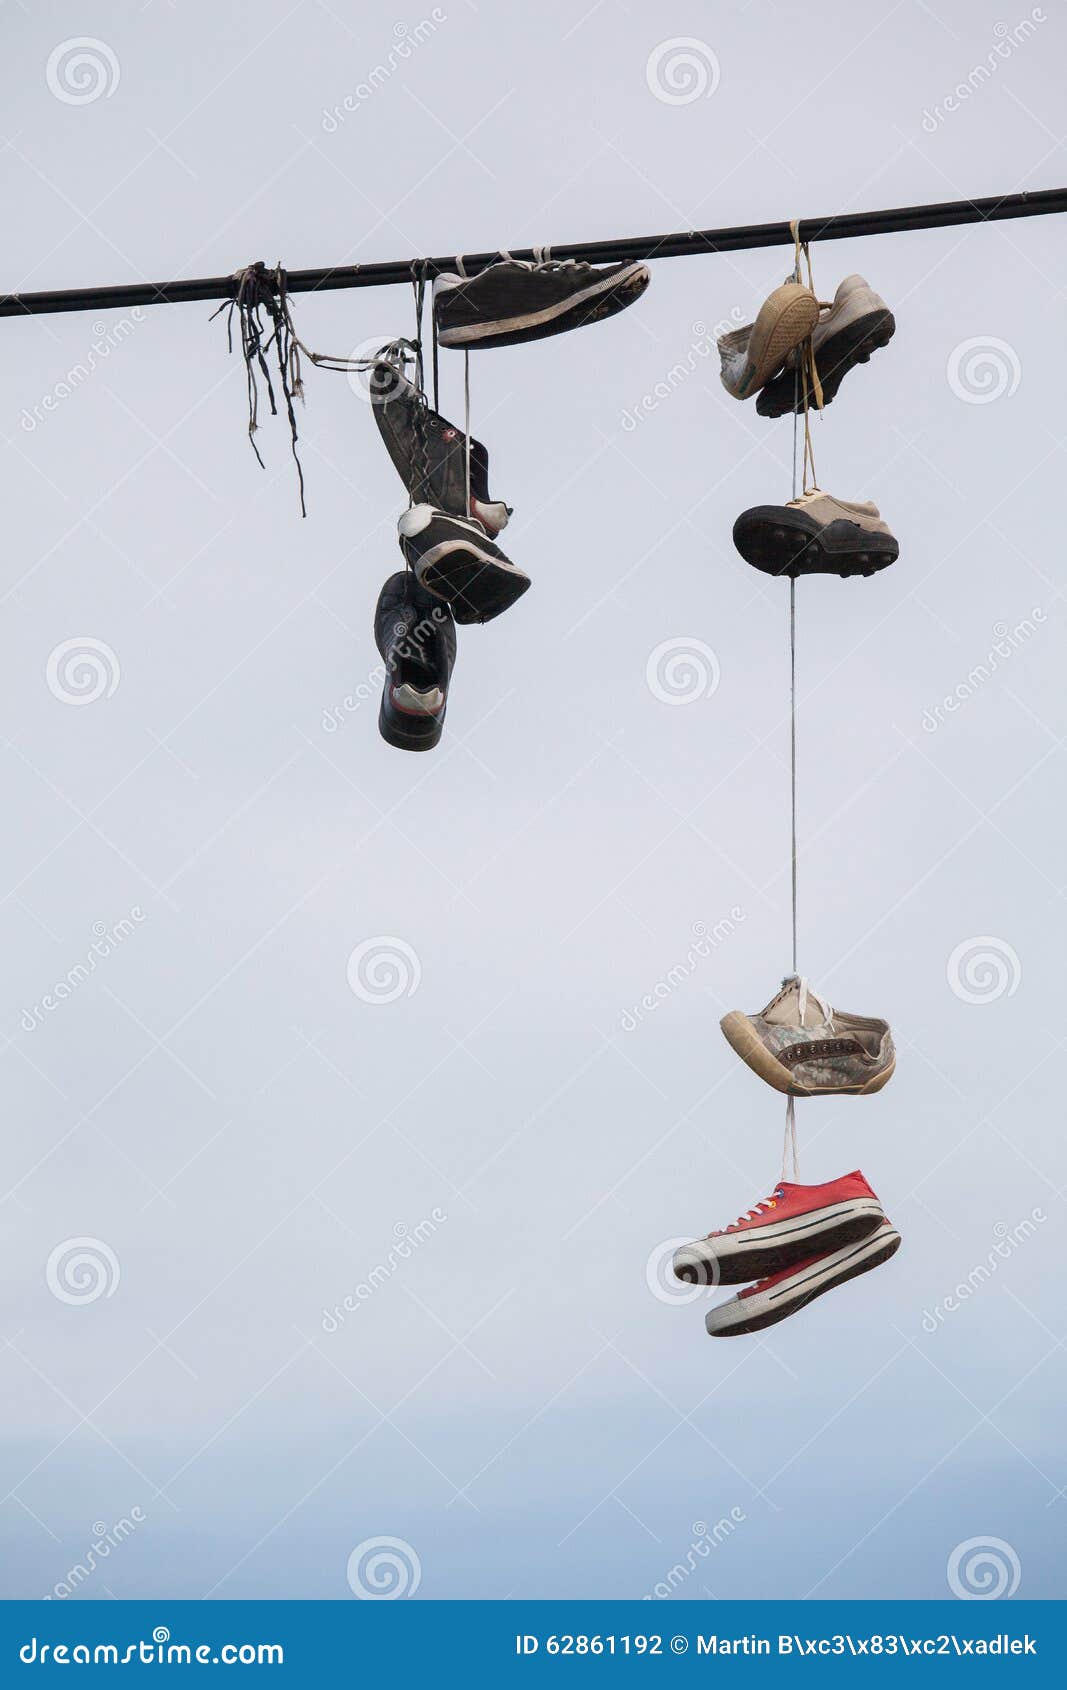 Почему висят кроссовки. Старый башмак на проводах. Тапочки висят на проводах. Обувь висит на электропроводах.